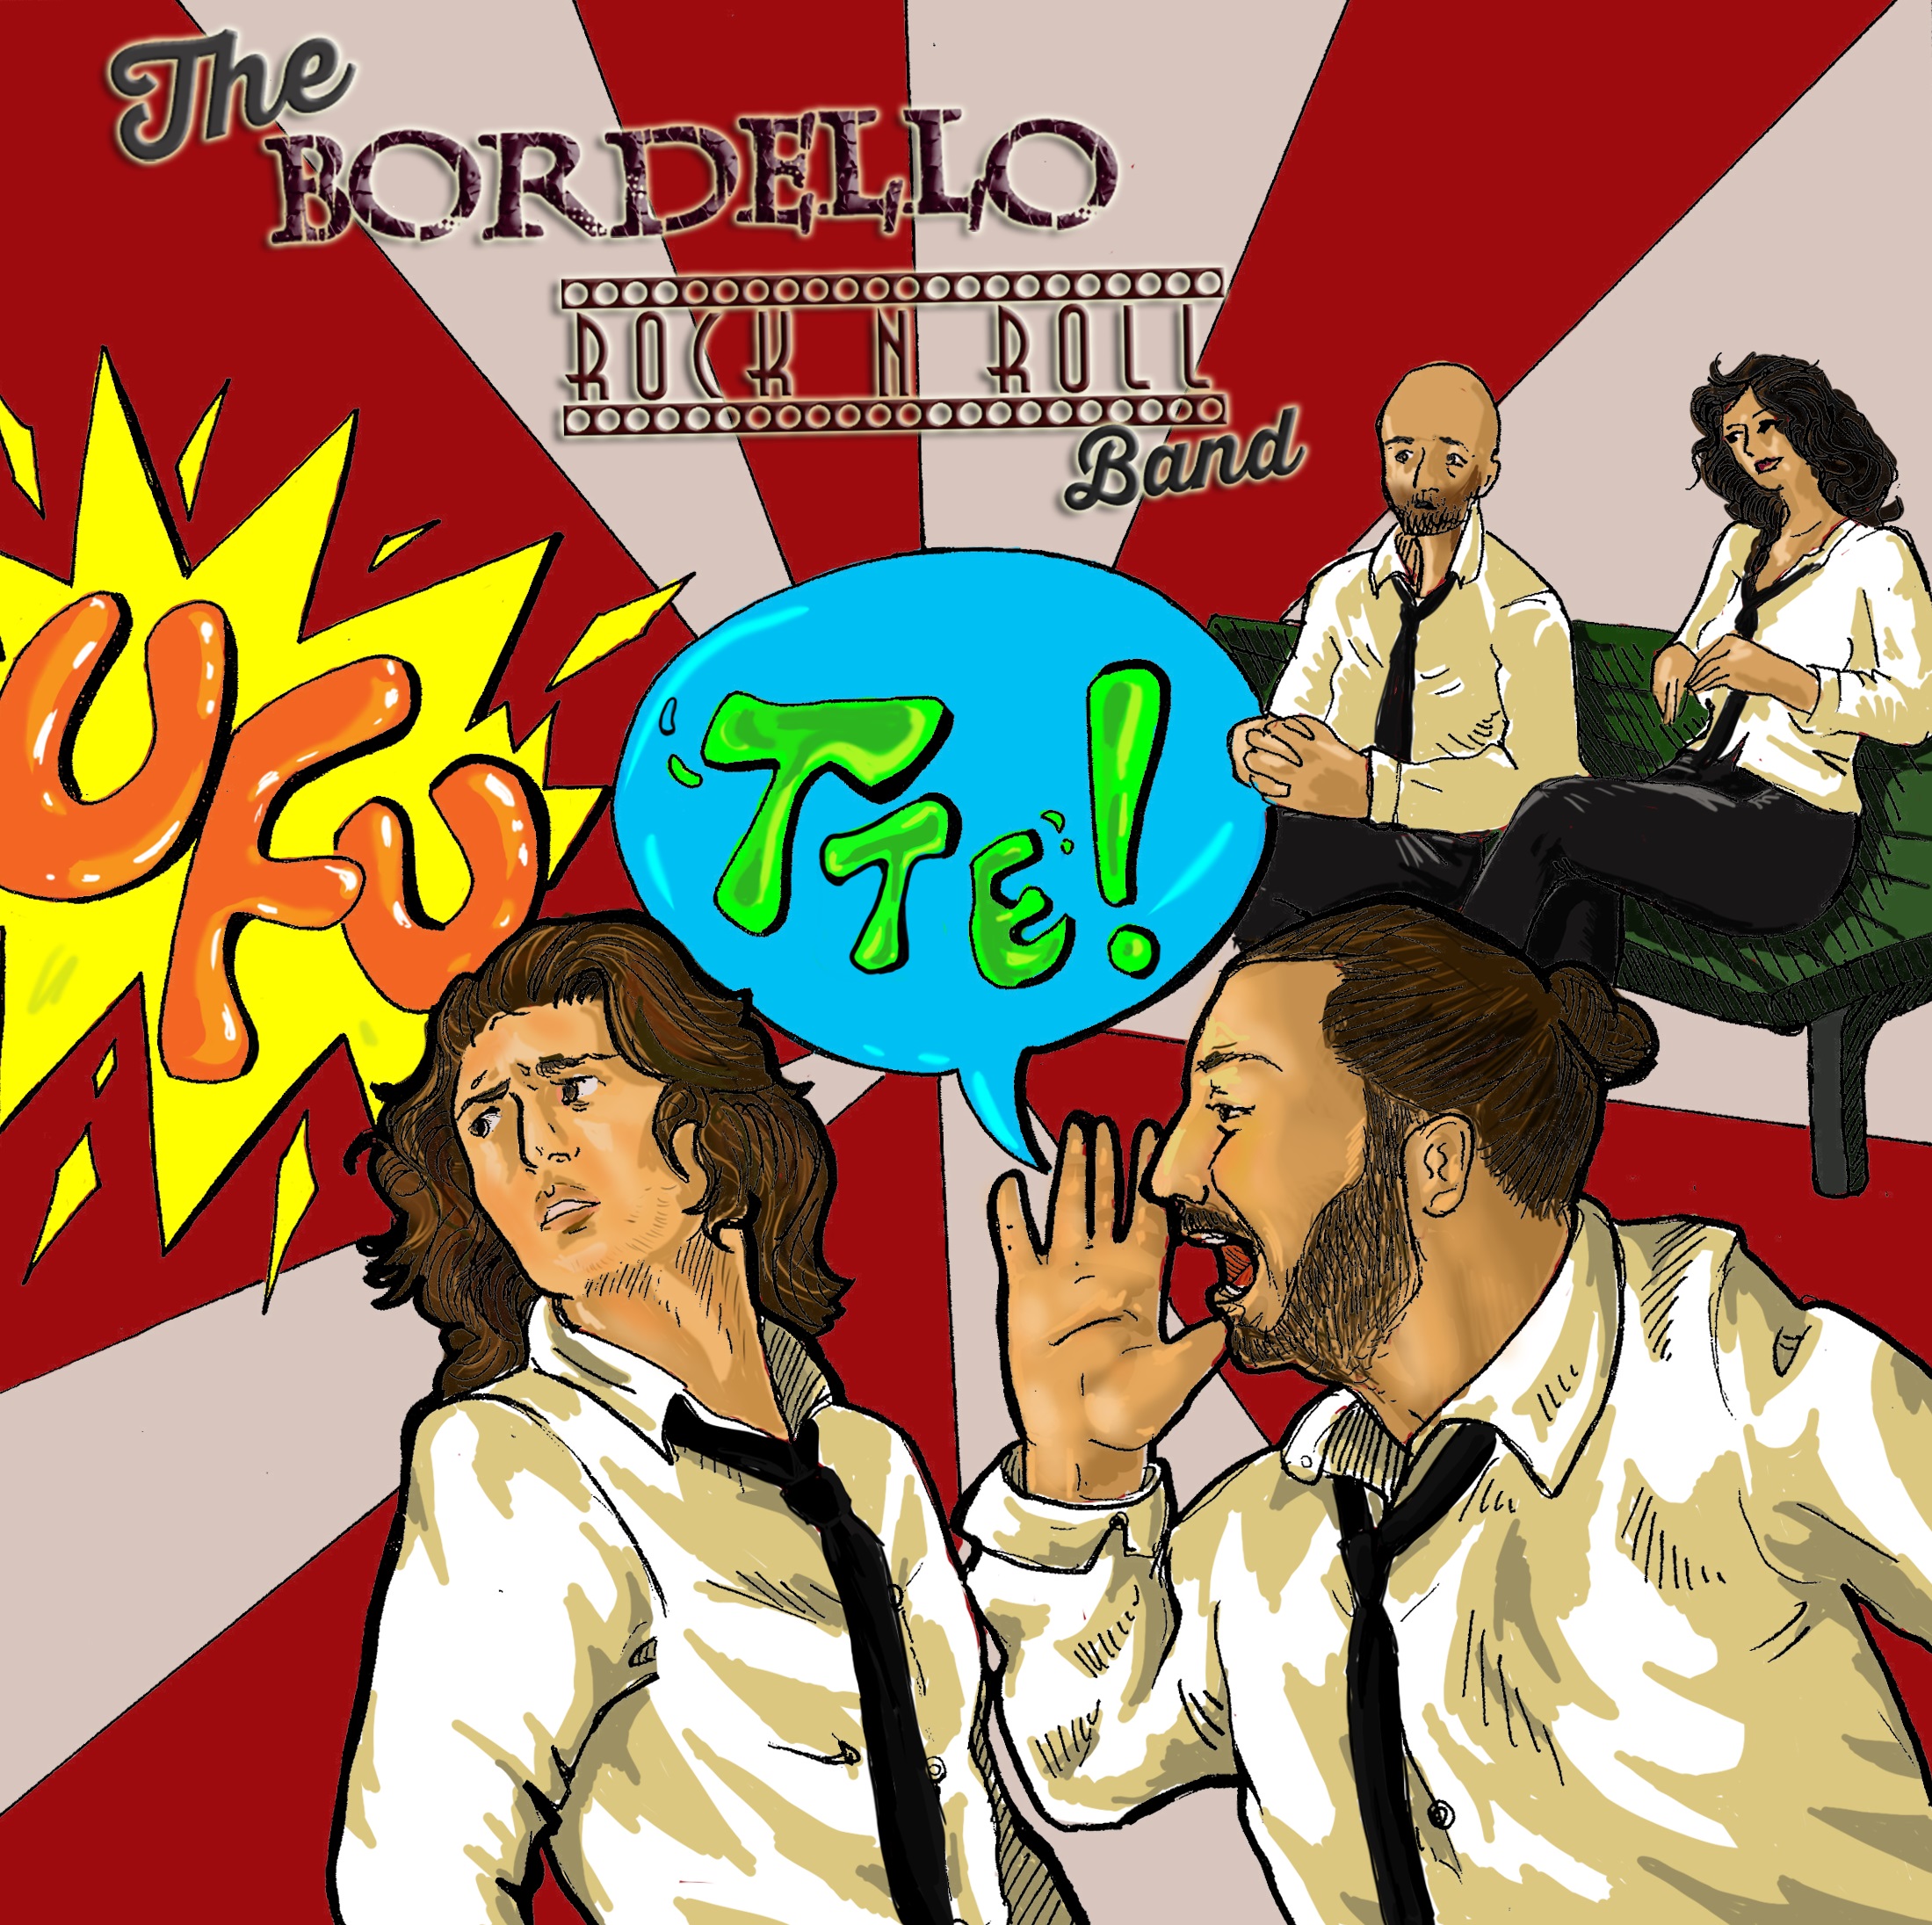 The Bordello Rock’n Roll band presenta il brano “Ufu”